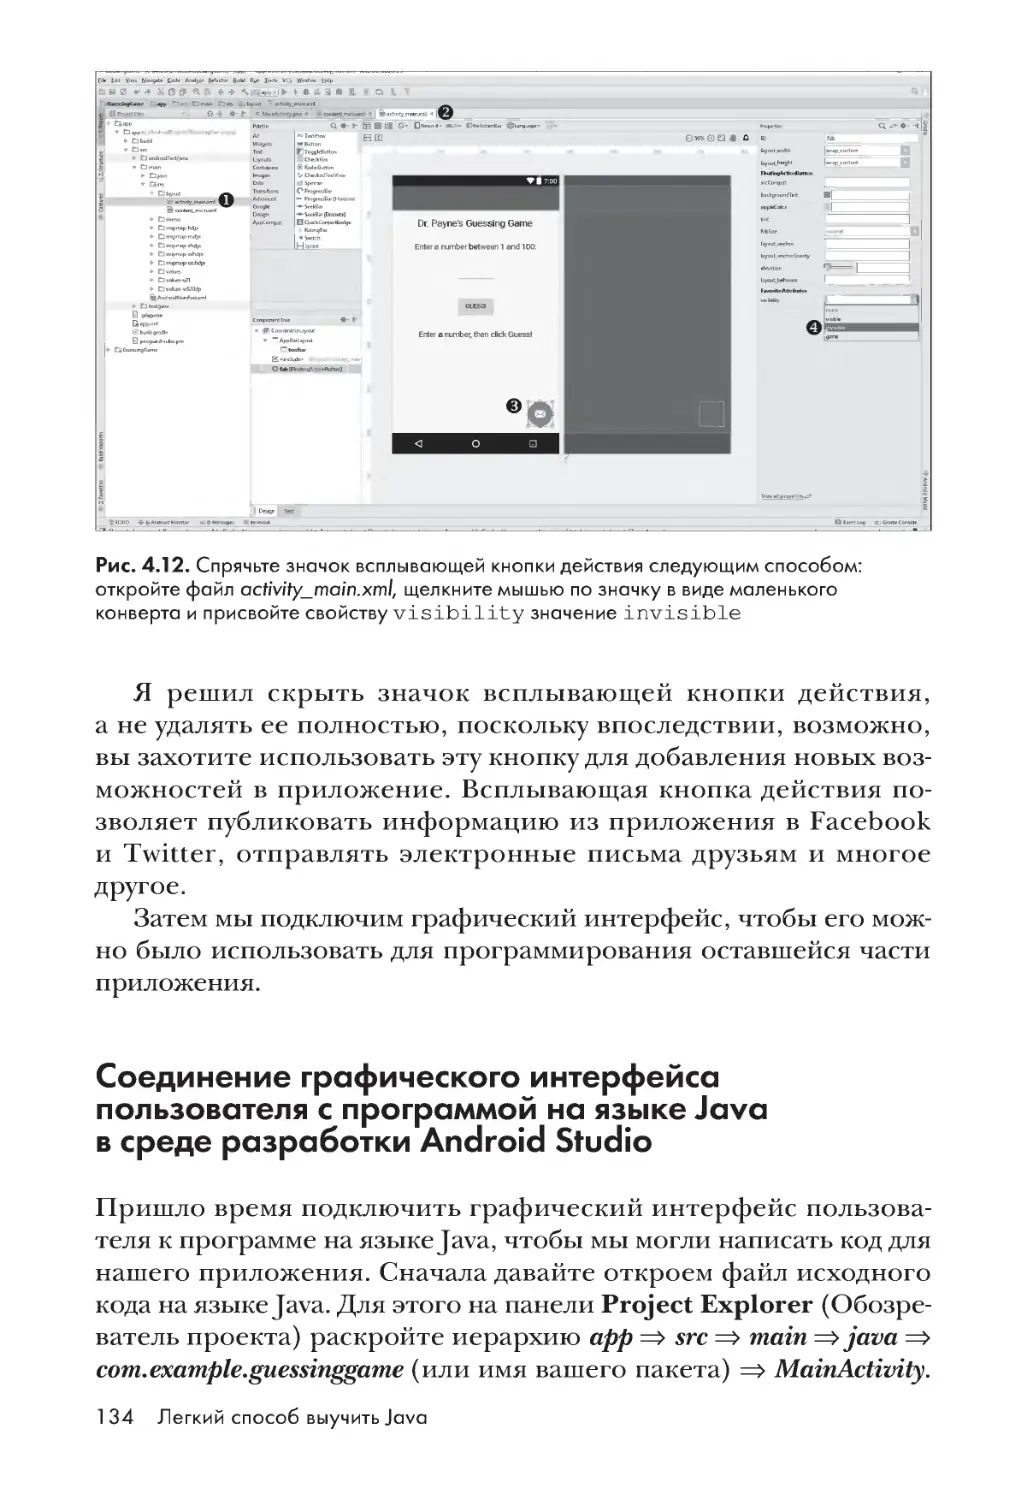 Соединение графического интерфейса пользователя с программой на языке Java в среде разработки Android Studio